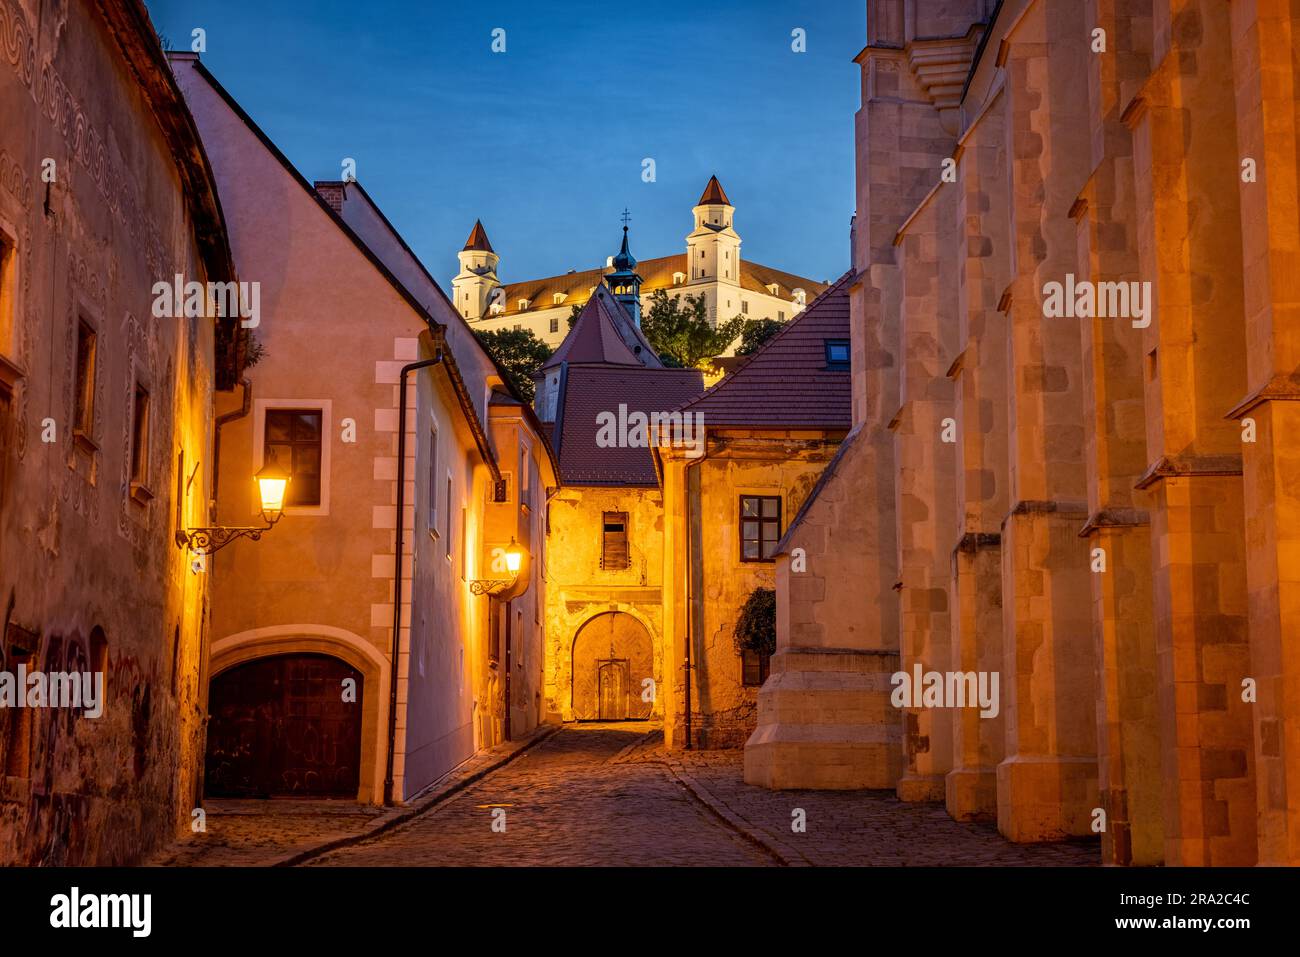 Bratislava Altstadt mit Blick auf die beleuchtete Burg. Blue Hour/Dämmerung. Stockfoto